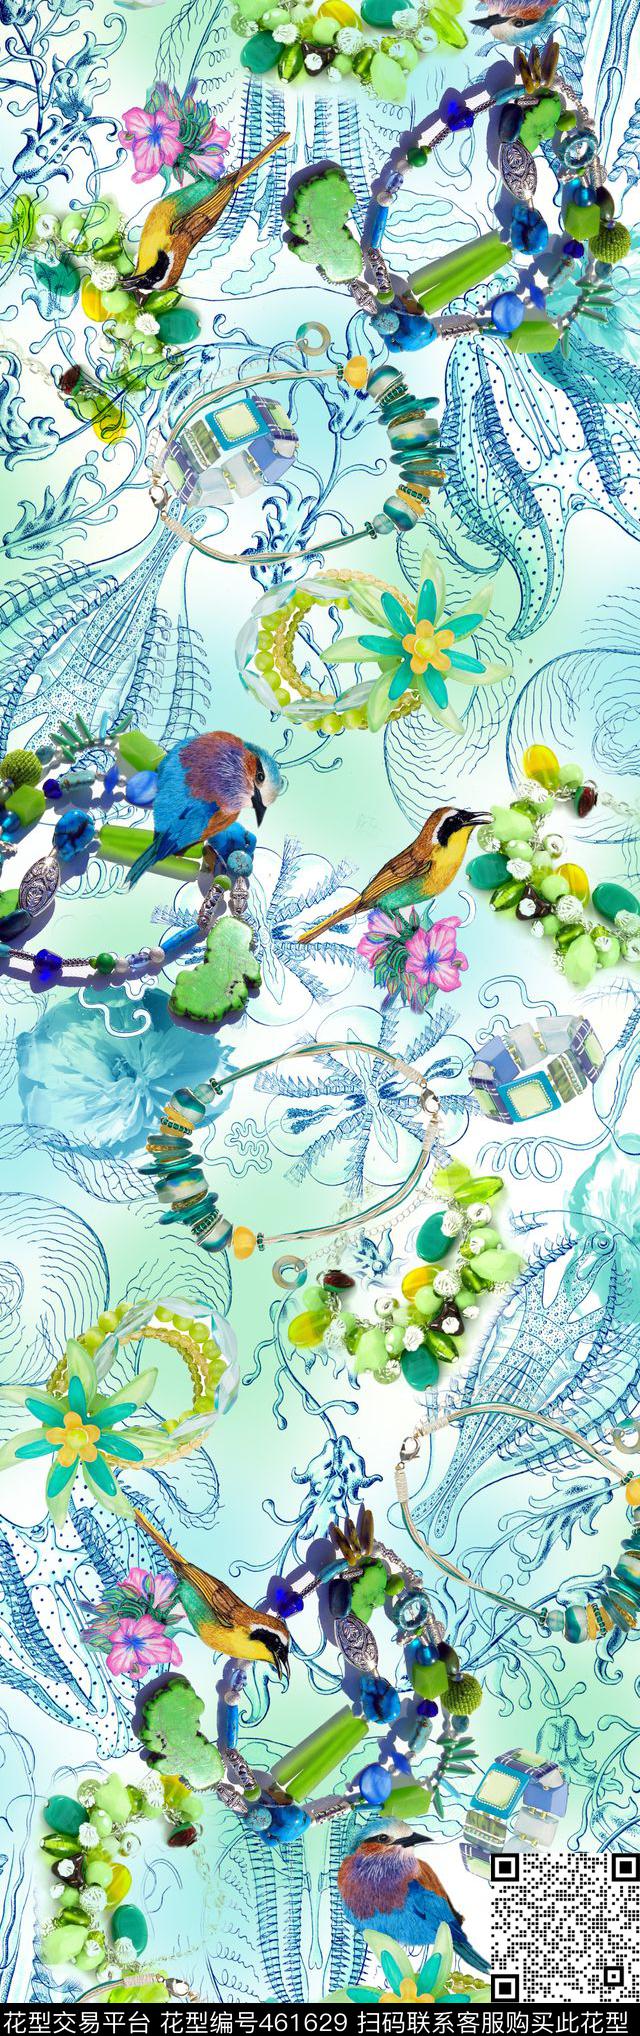 海洋的鱼 - 461629 - 海螺贝壳 项链首饰 蓝绿清新色调 - 数码印花花型 － 长巾花型设计 － 瓦栏